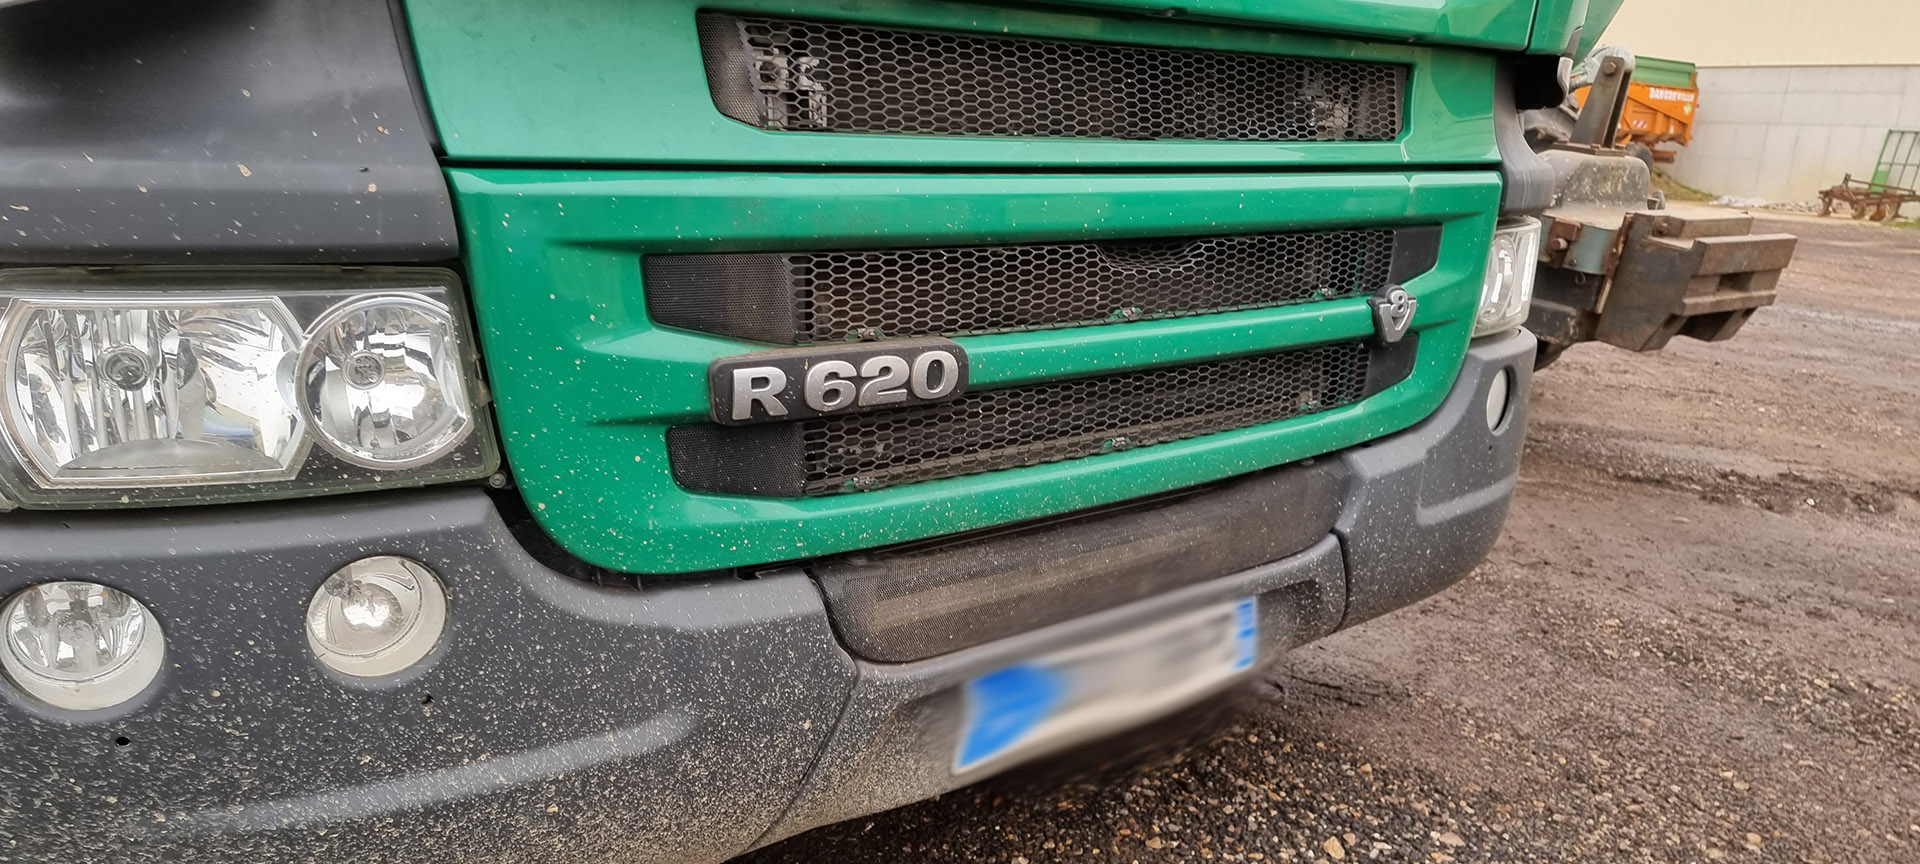 Scania R620 V8 Stage 1